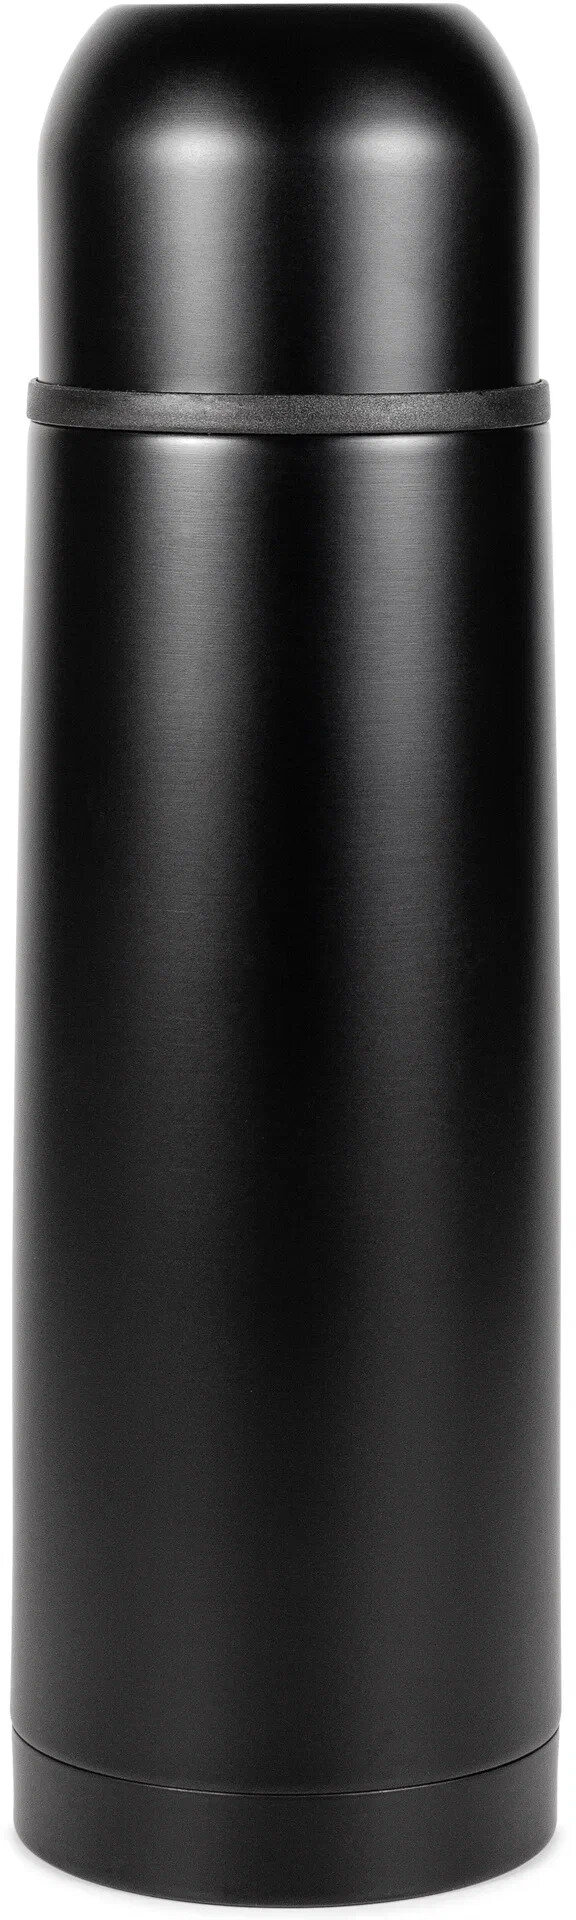 Классический термос Relaxika 101 без логотипа, 0.75 л, черный